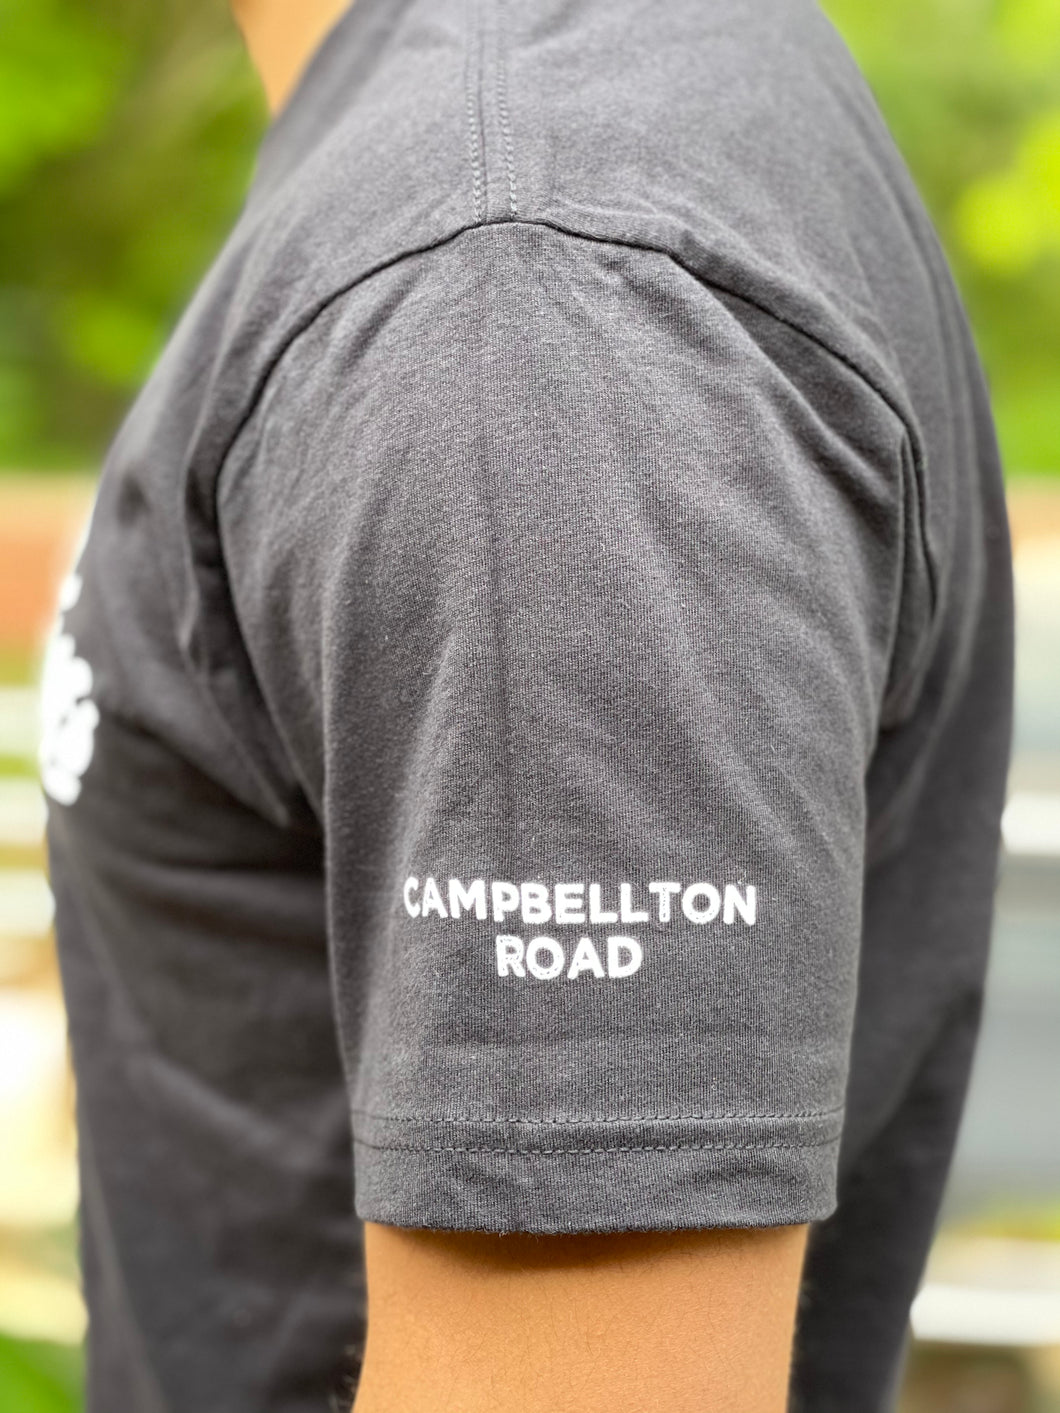 Campbellton Road, Humble Beginnings Shirt